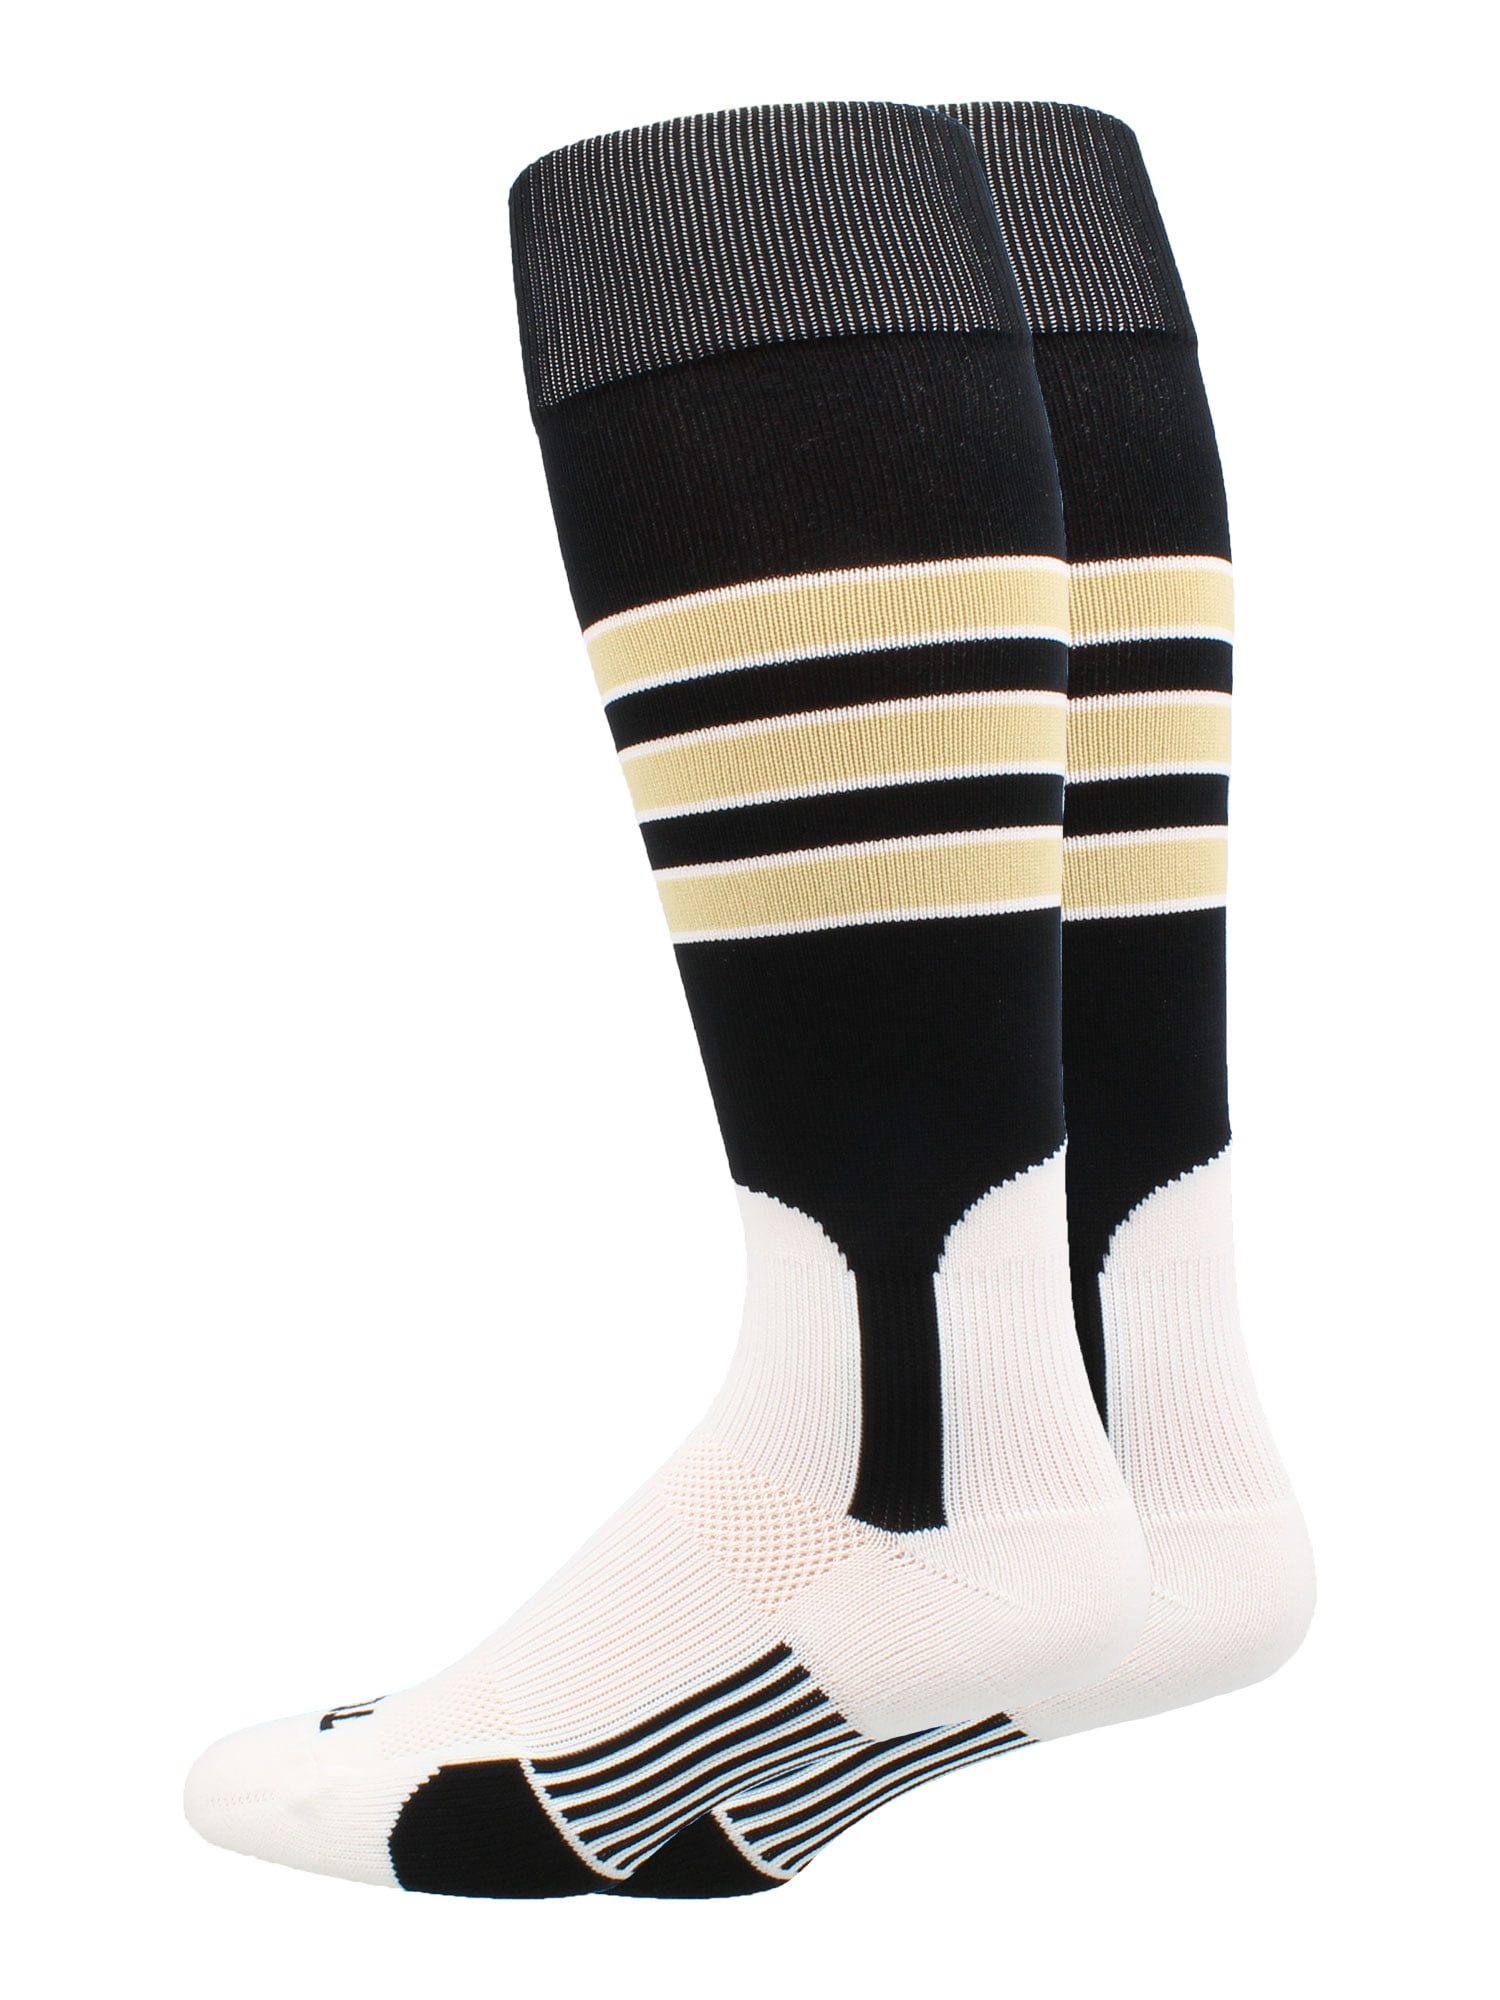 Baseball Socks Vegas Gold /White/Black/White  New 